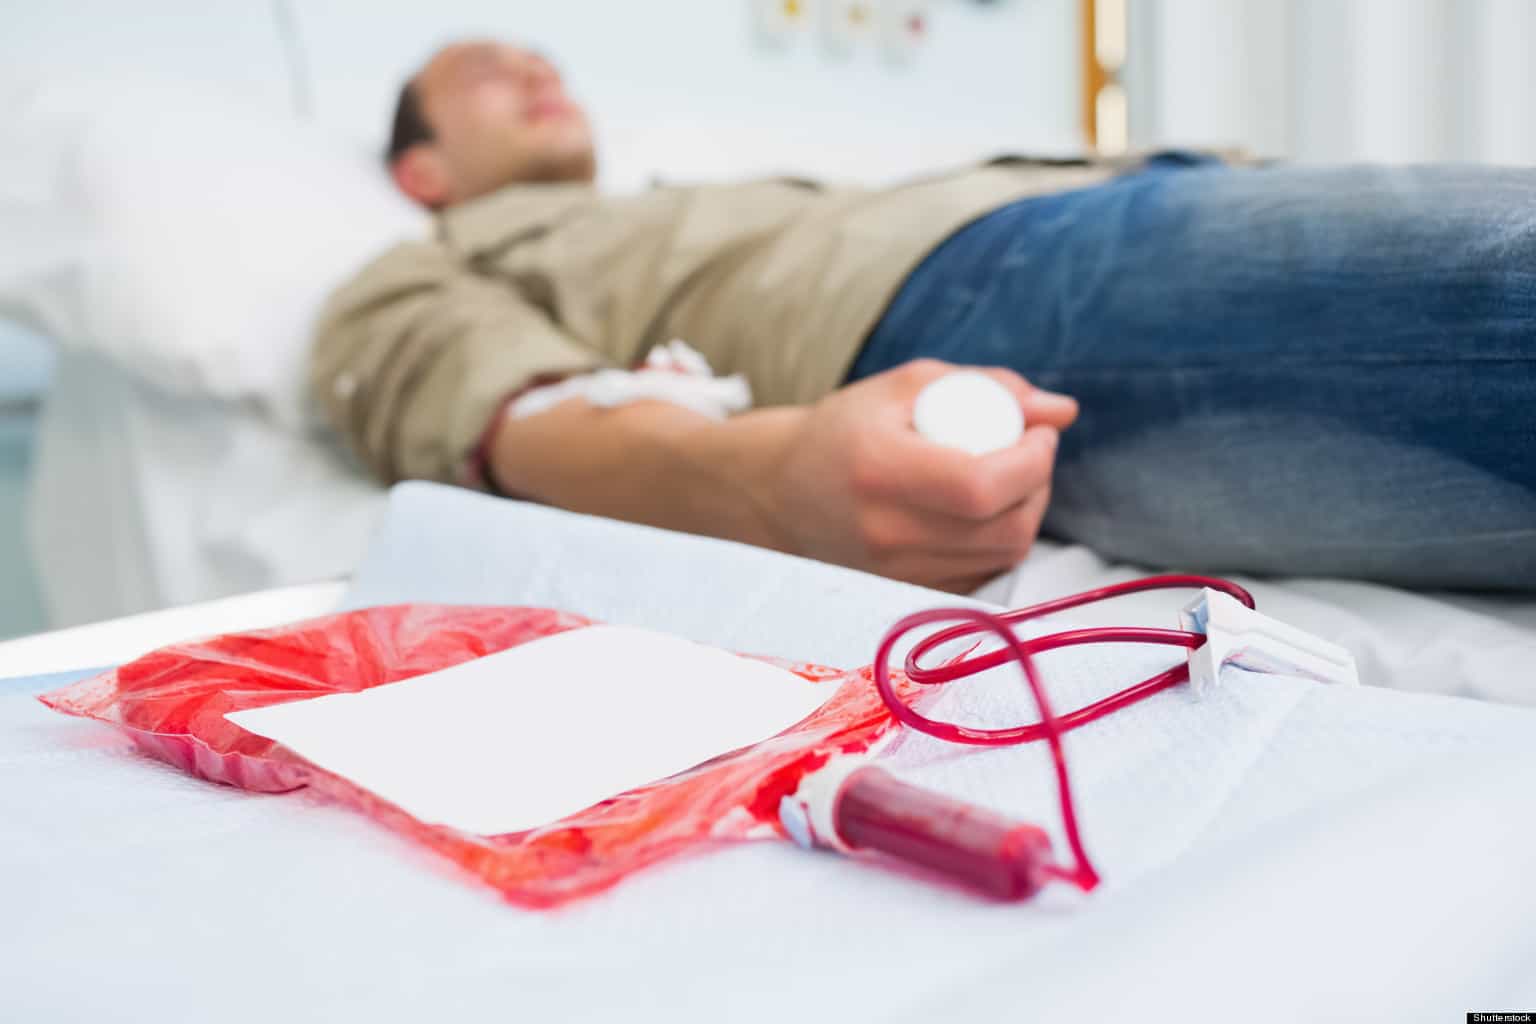 Ljudima koji imaju gustu krv ne preporučuje se davanje krvi, to je razlog